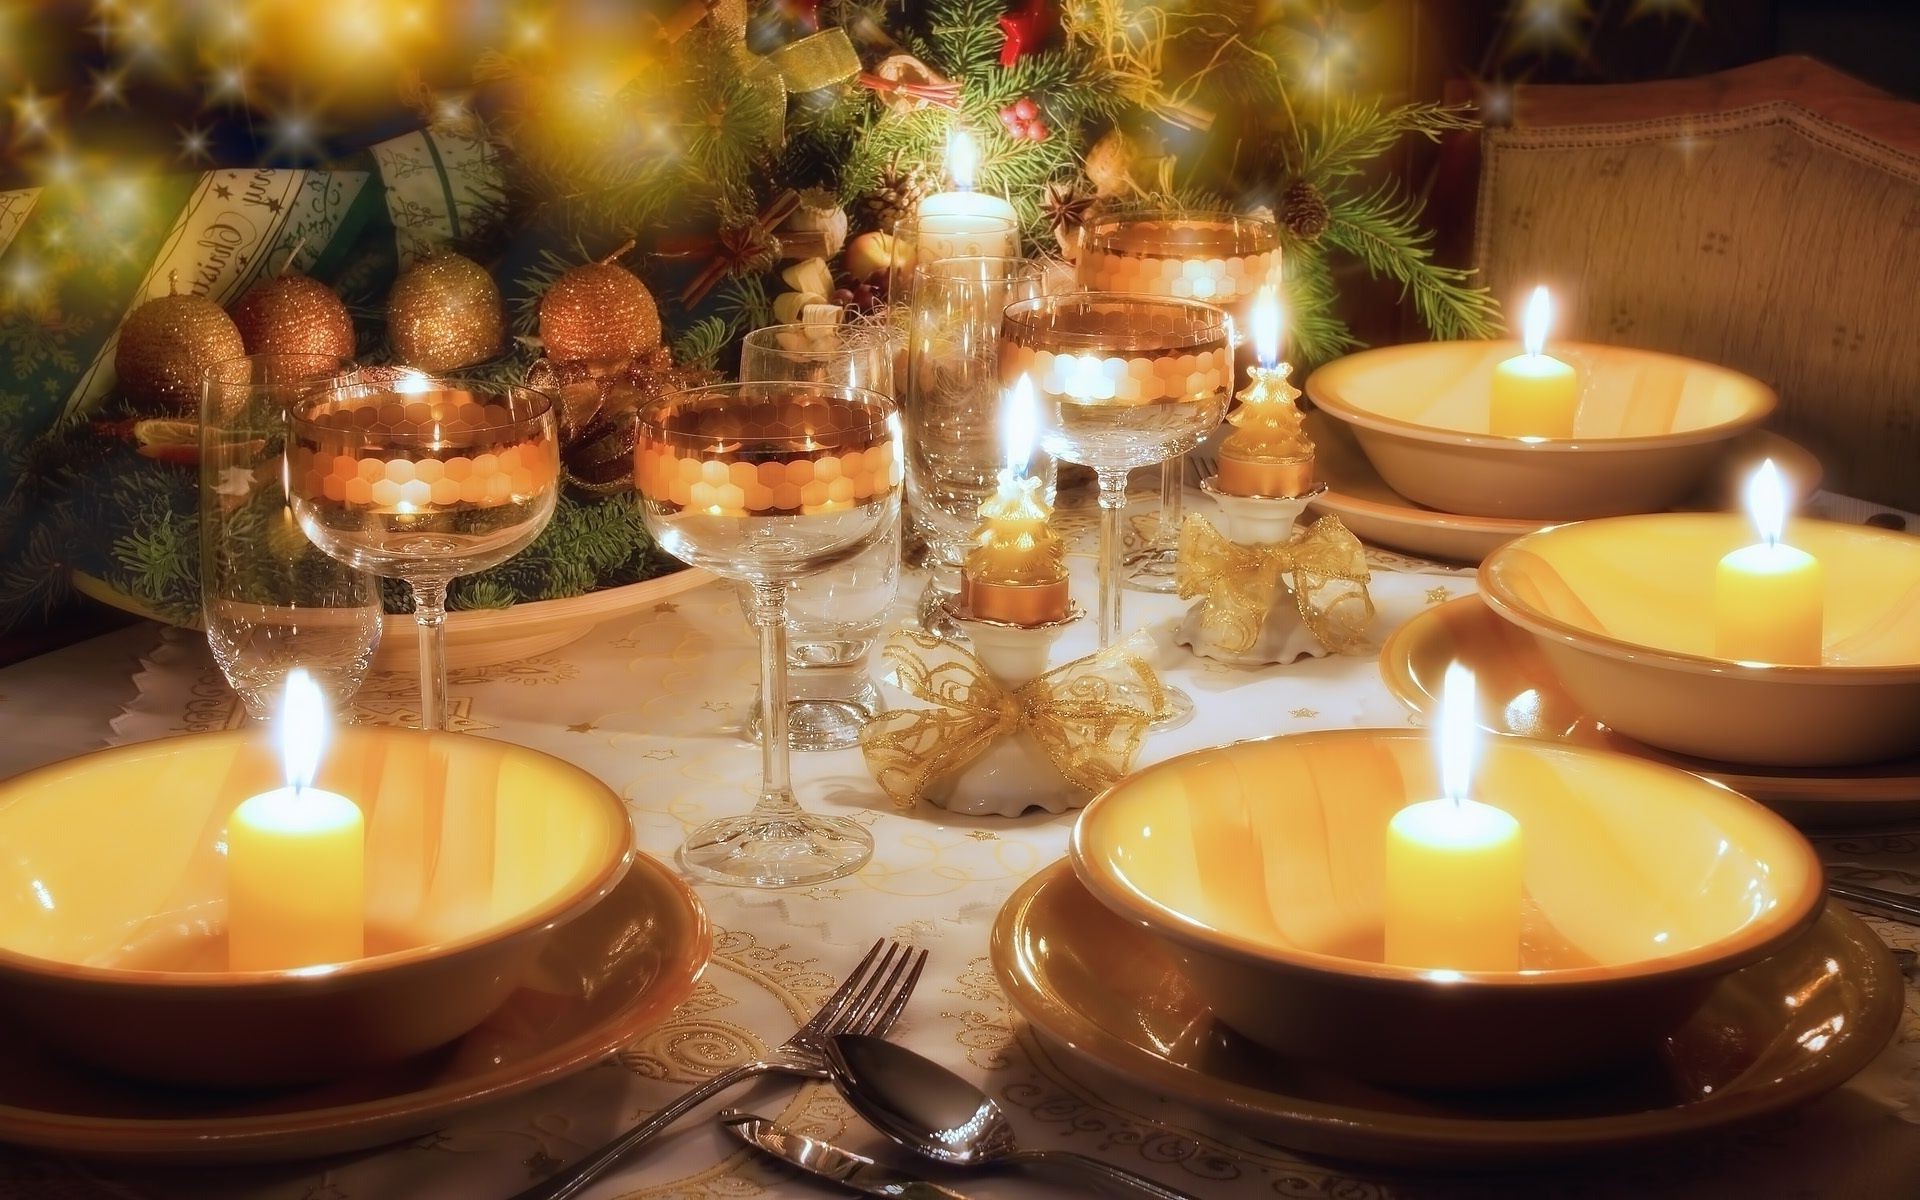 новый год свеча свечи рождество воск пламя подсвечник праздник сожгли украшения таблица тепло столовые приборы отпуск романтика участник свет романтический появлением